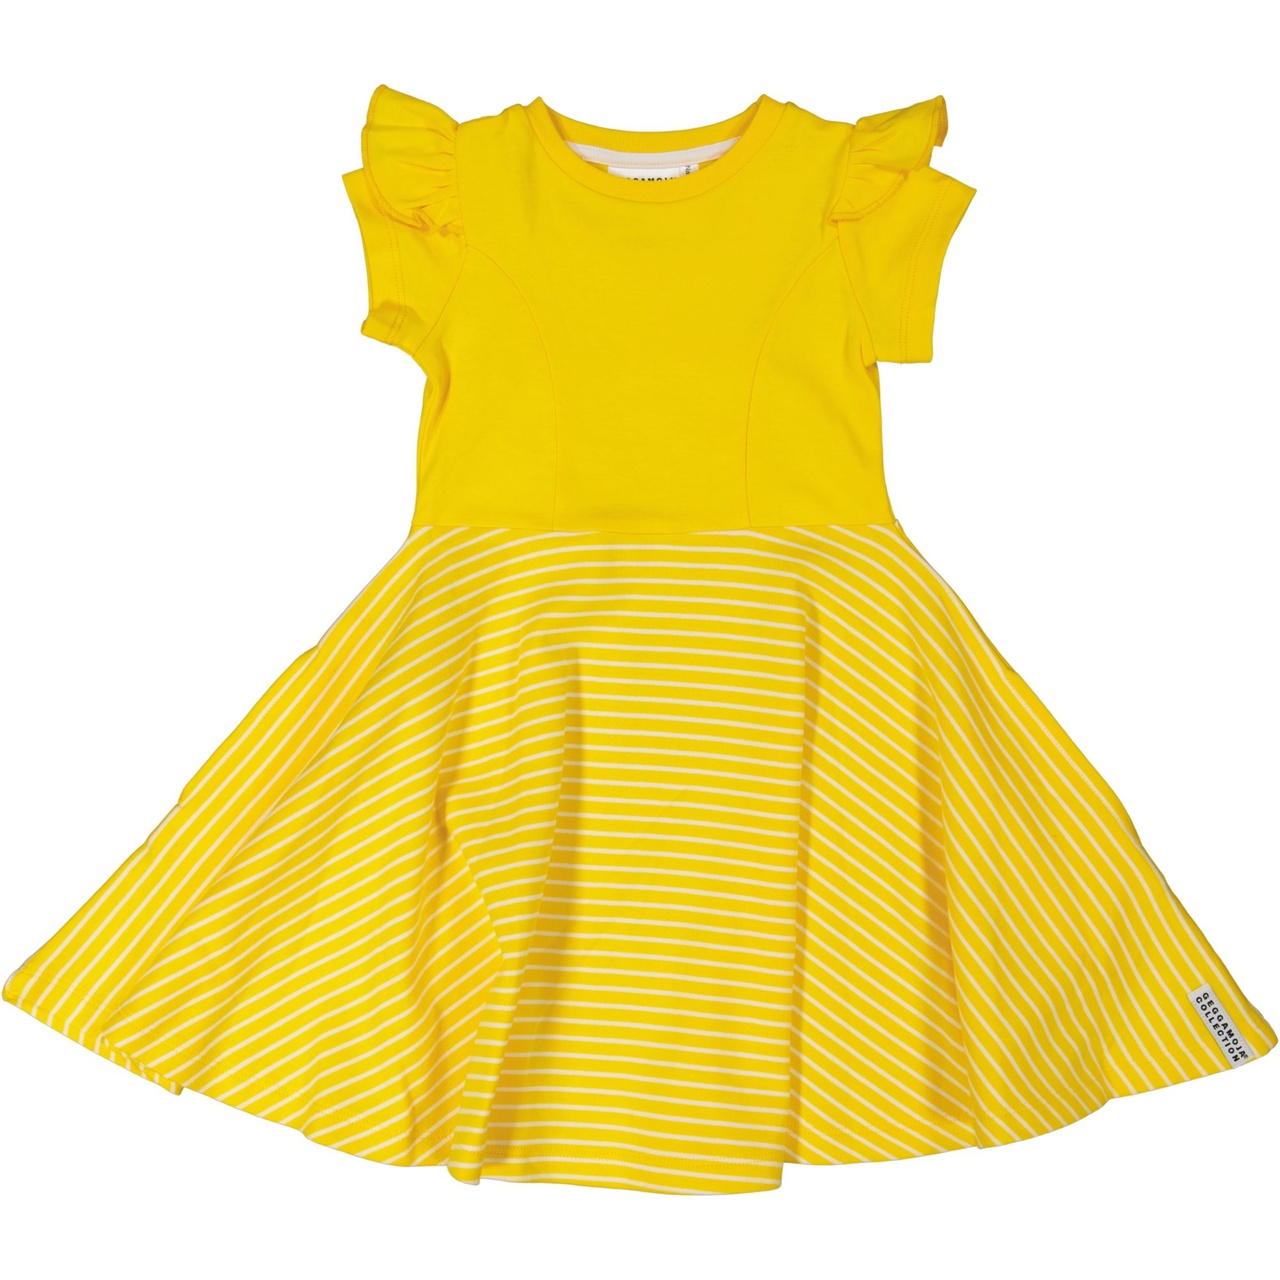 Flared dress Yellow/white  62/68